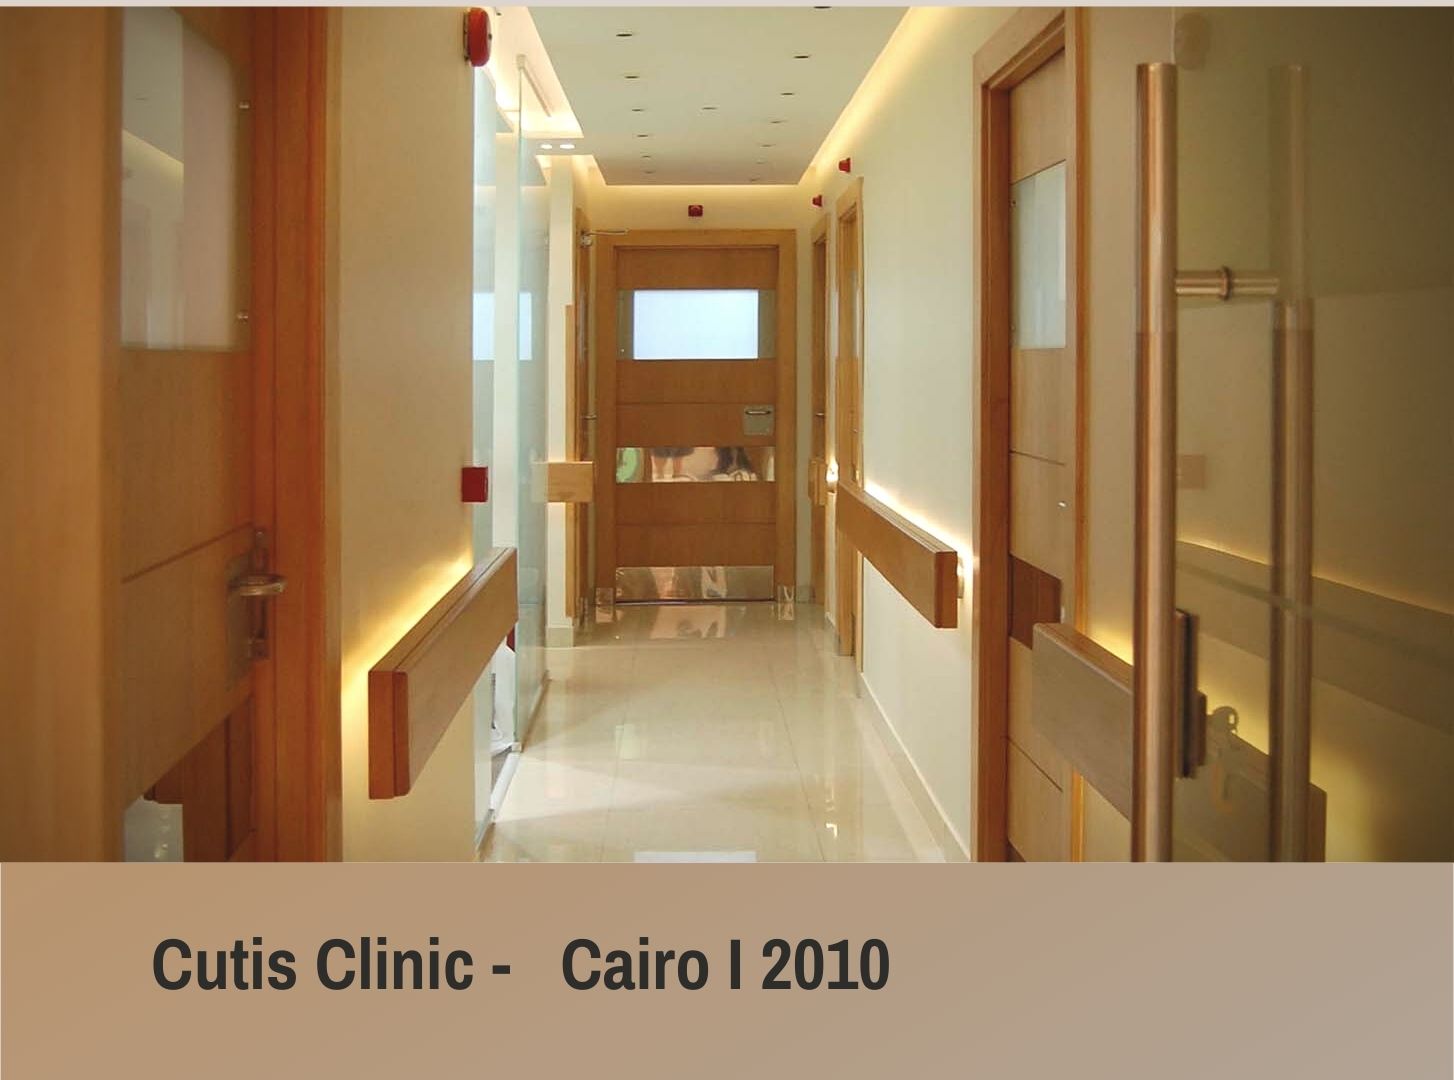 Cutis Clinic